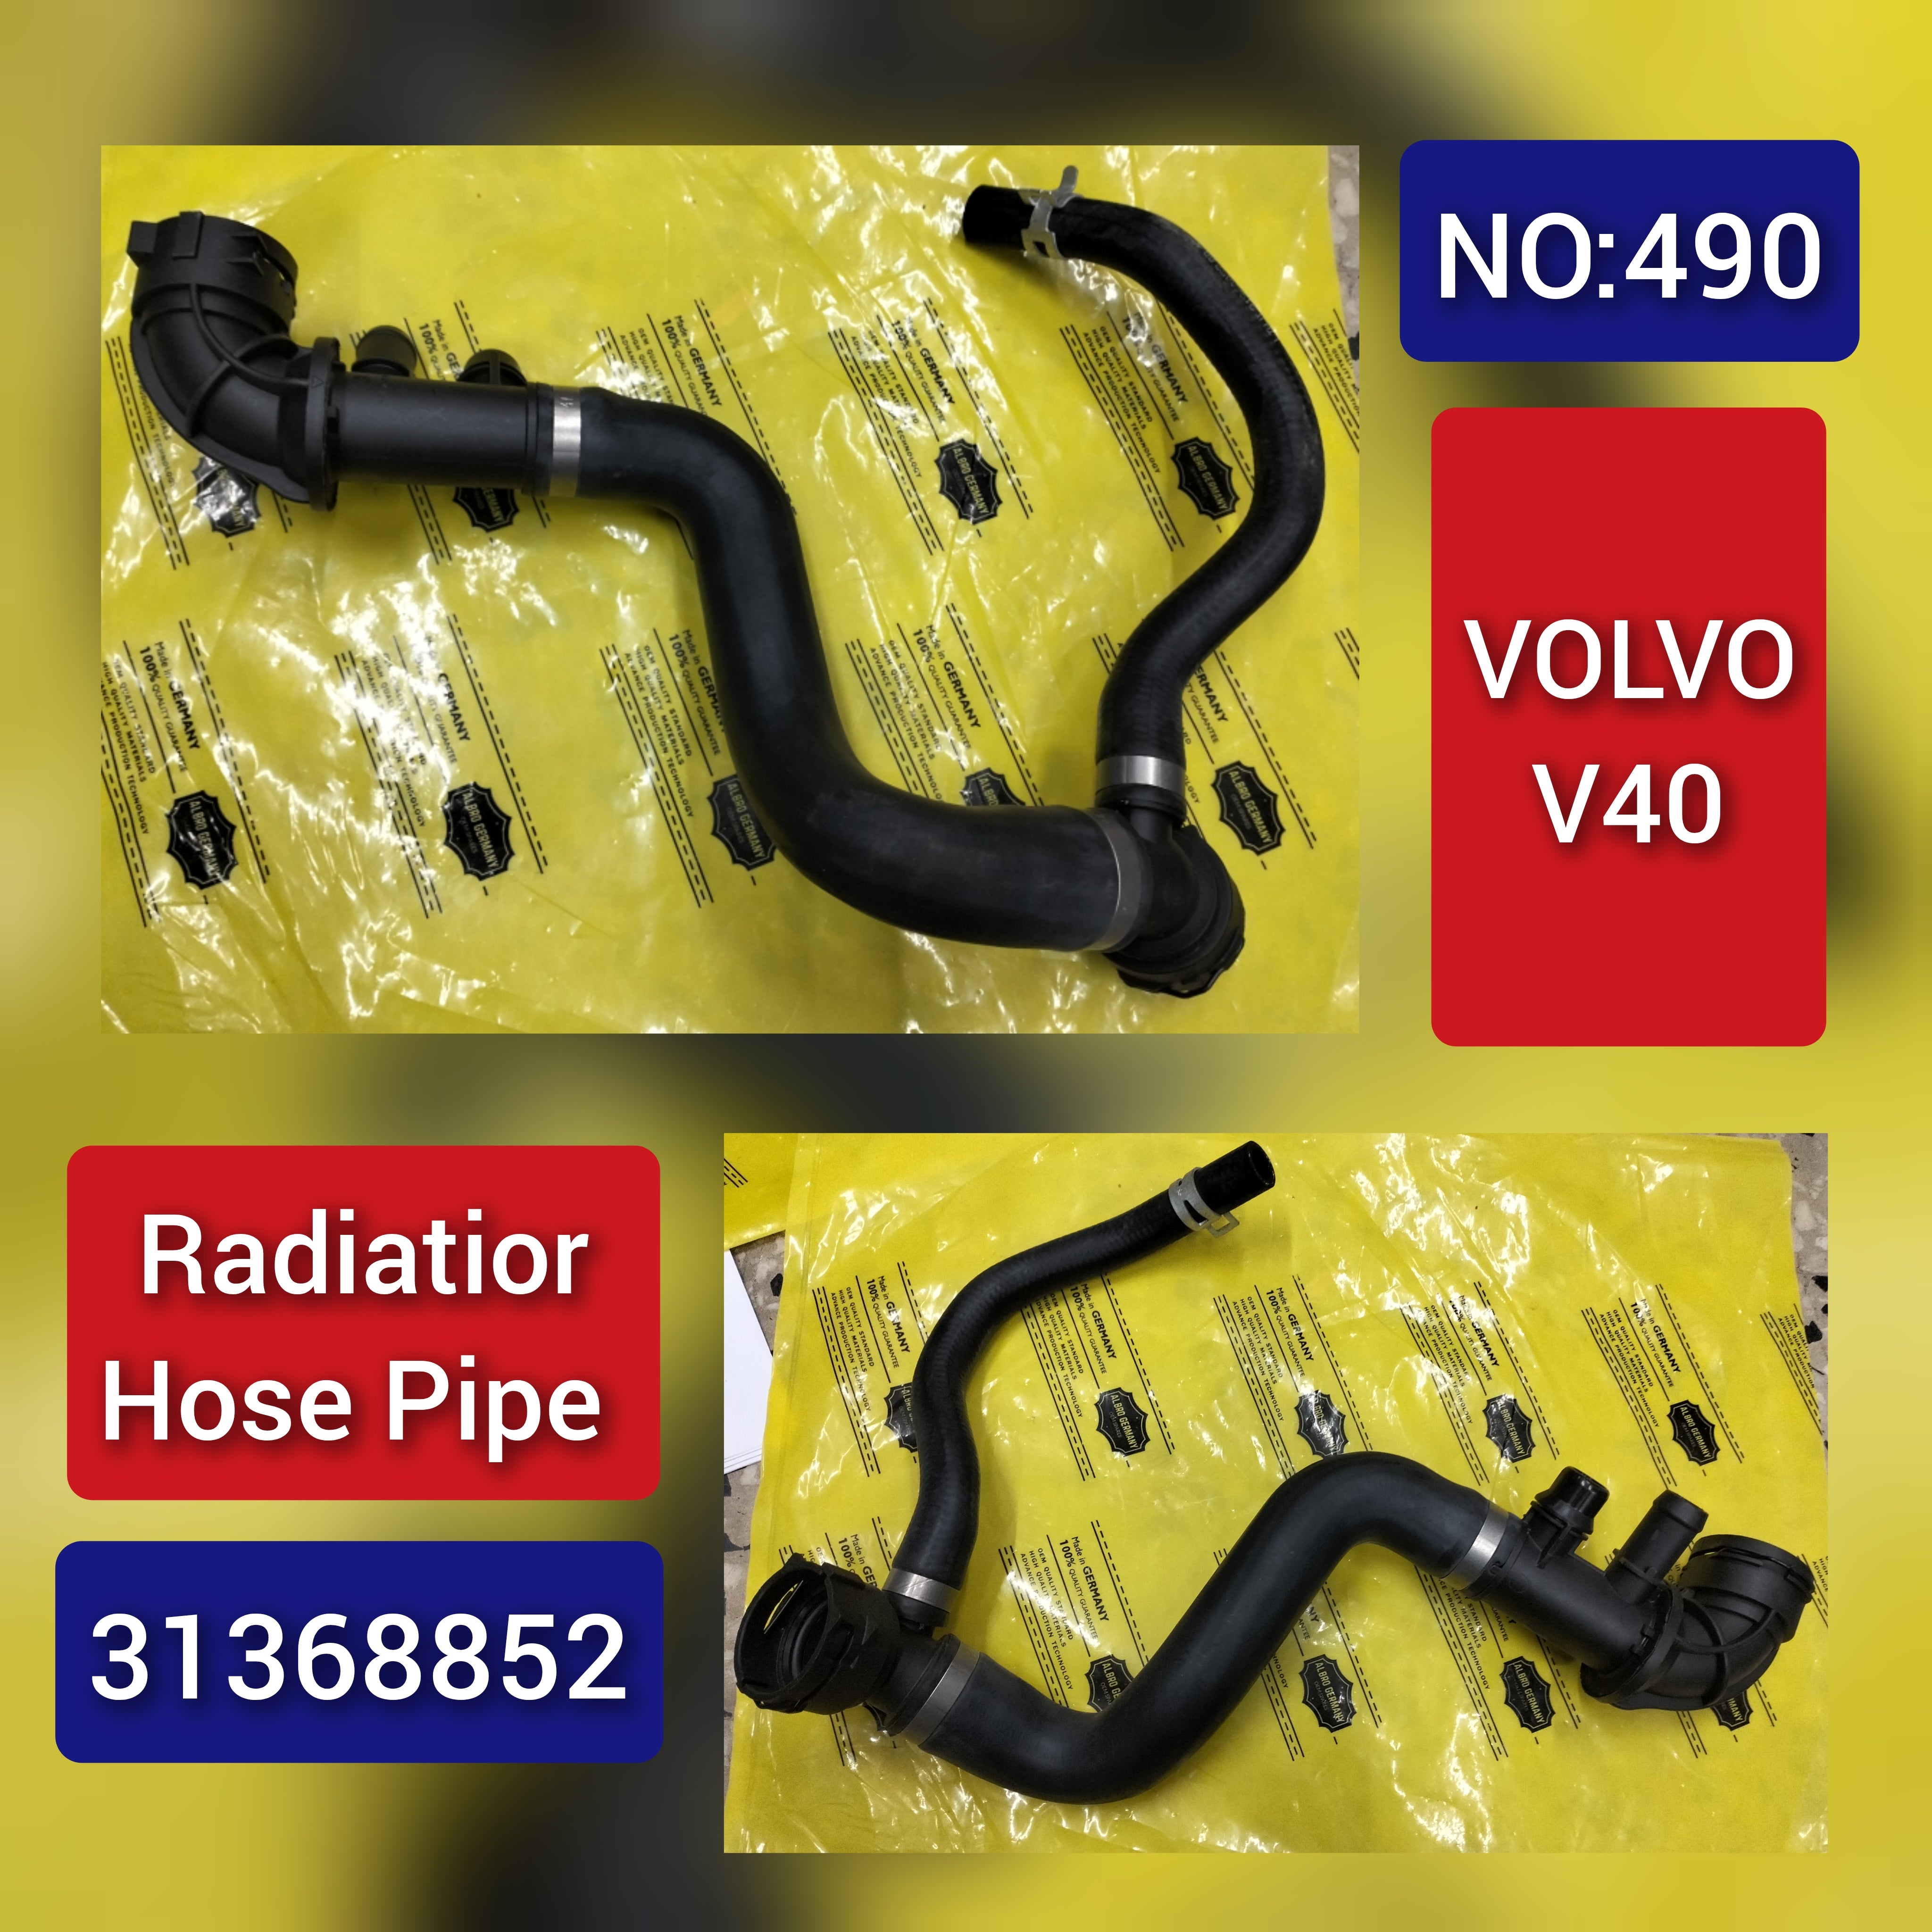 Radiator Hose Pipe 31368852 For Volvo V40 Tag-H-490